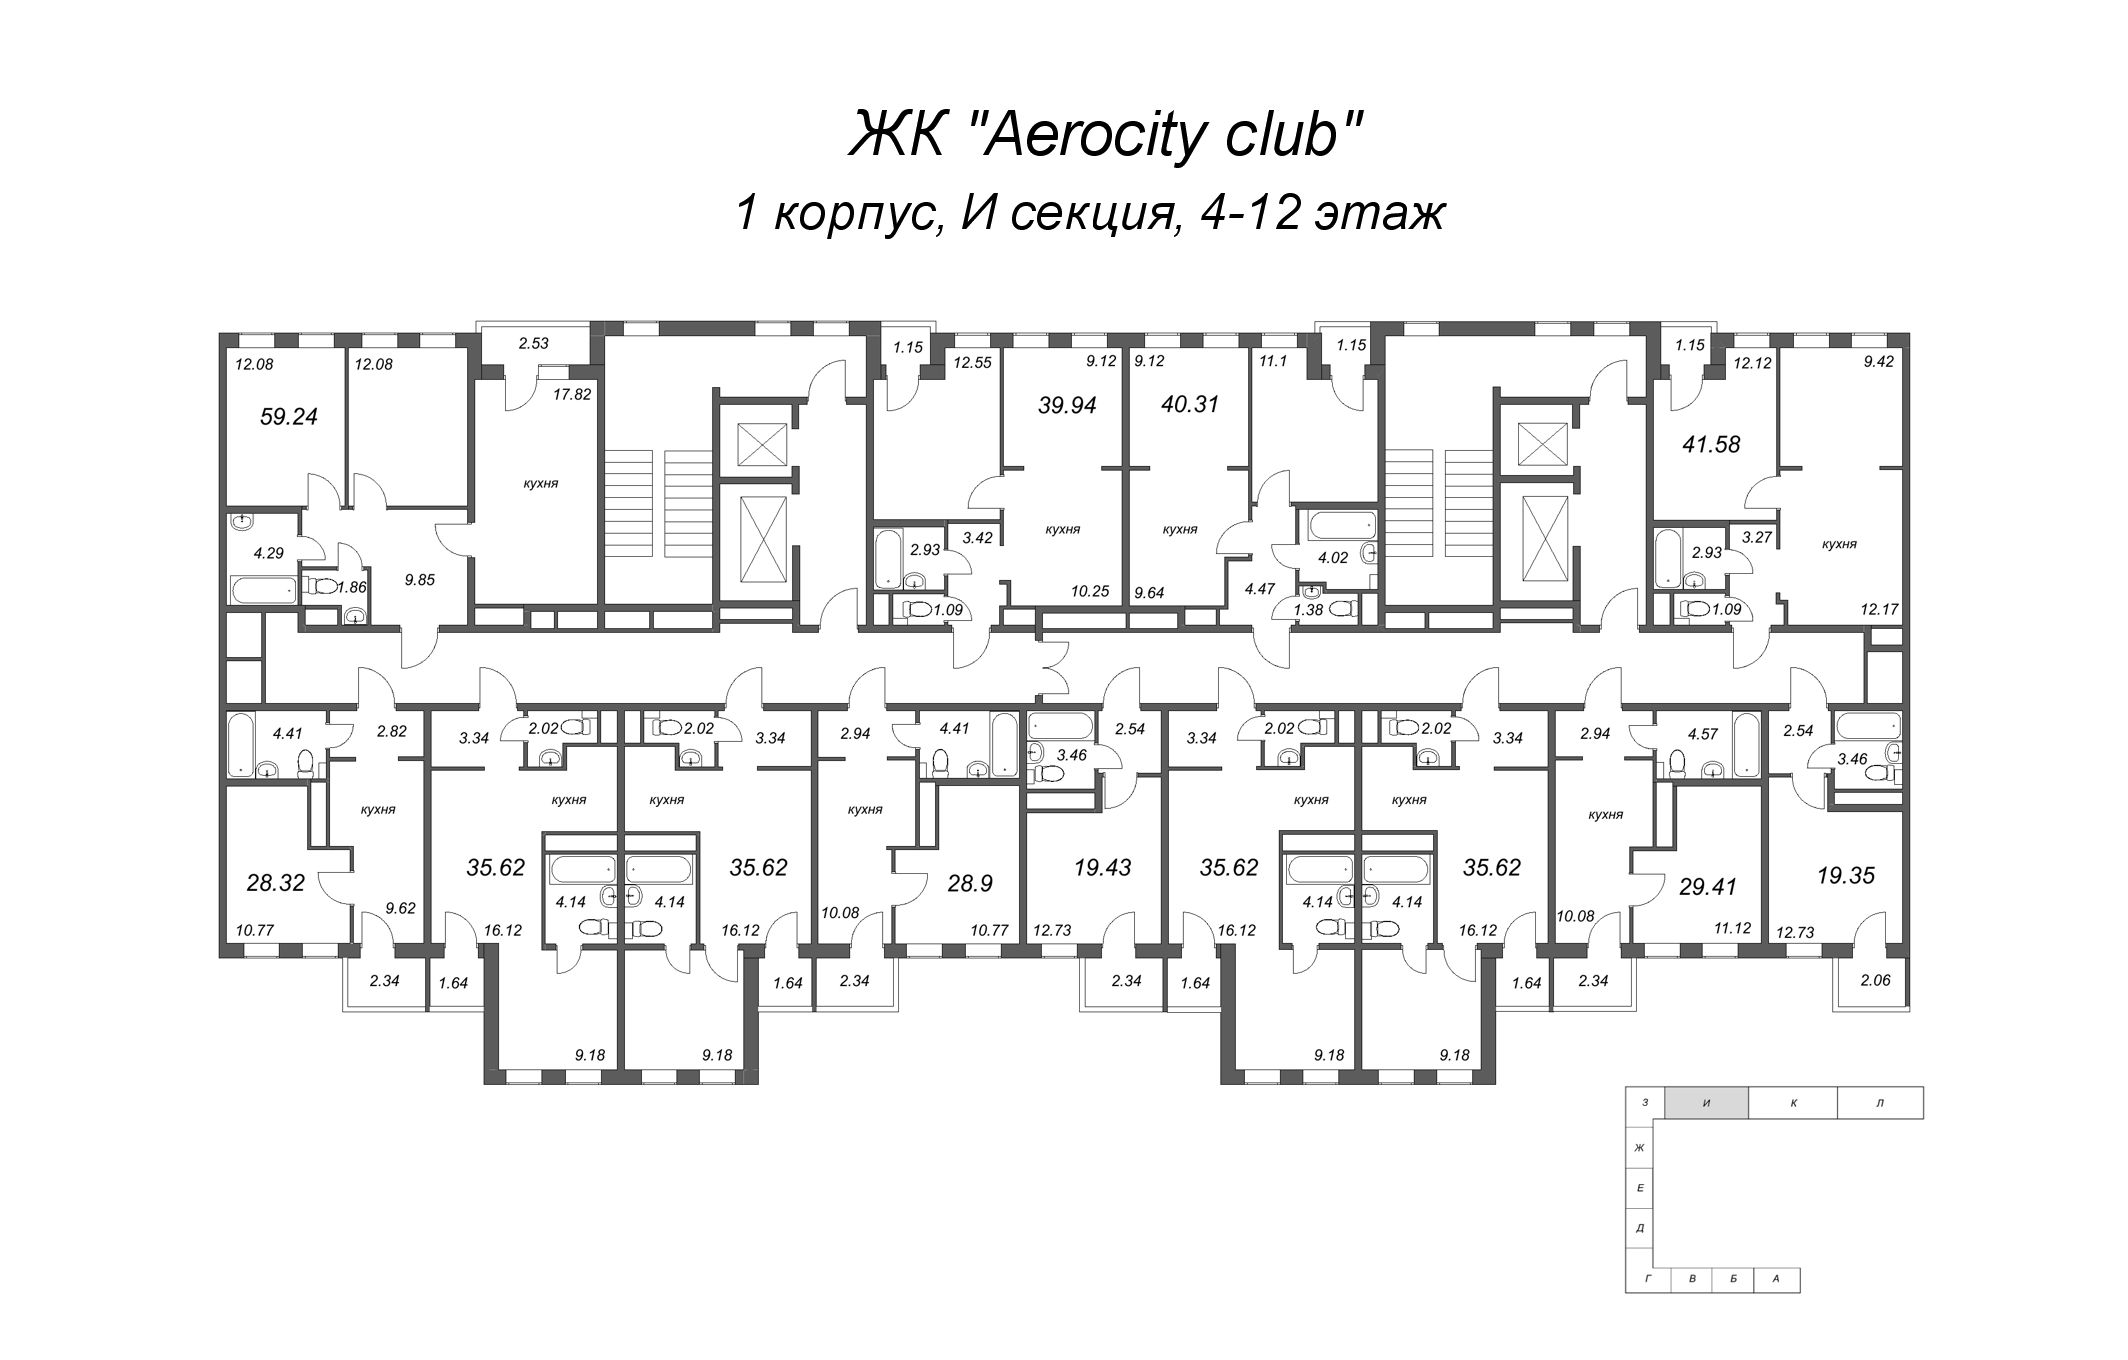 Квартира-студия, 19.35 м² в ЖК "AEROCITY Club" - планировка этажа